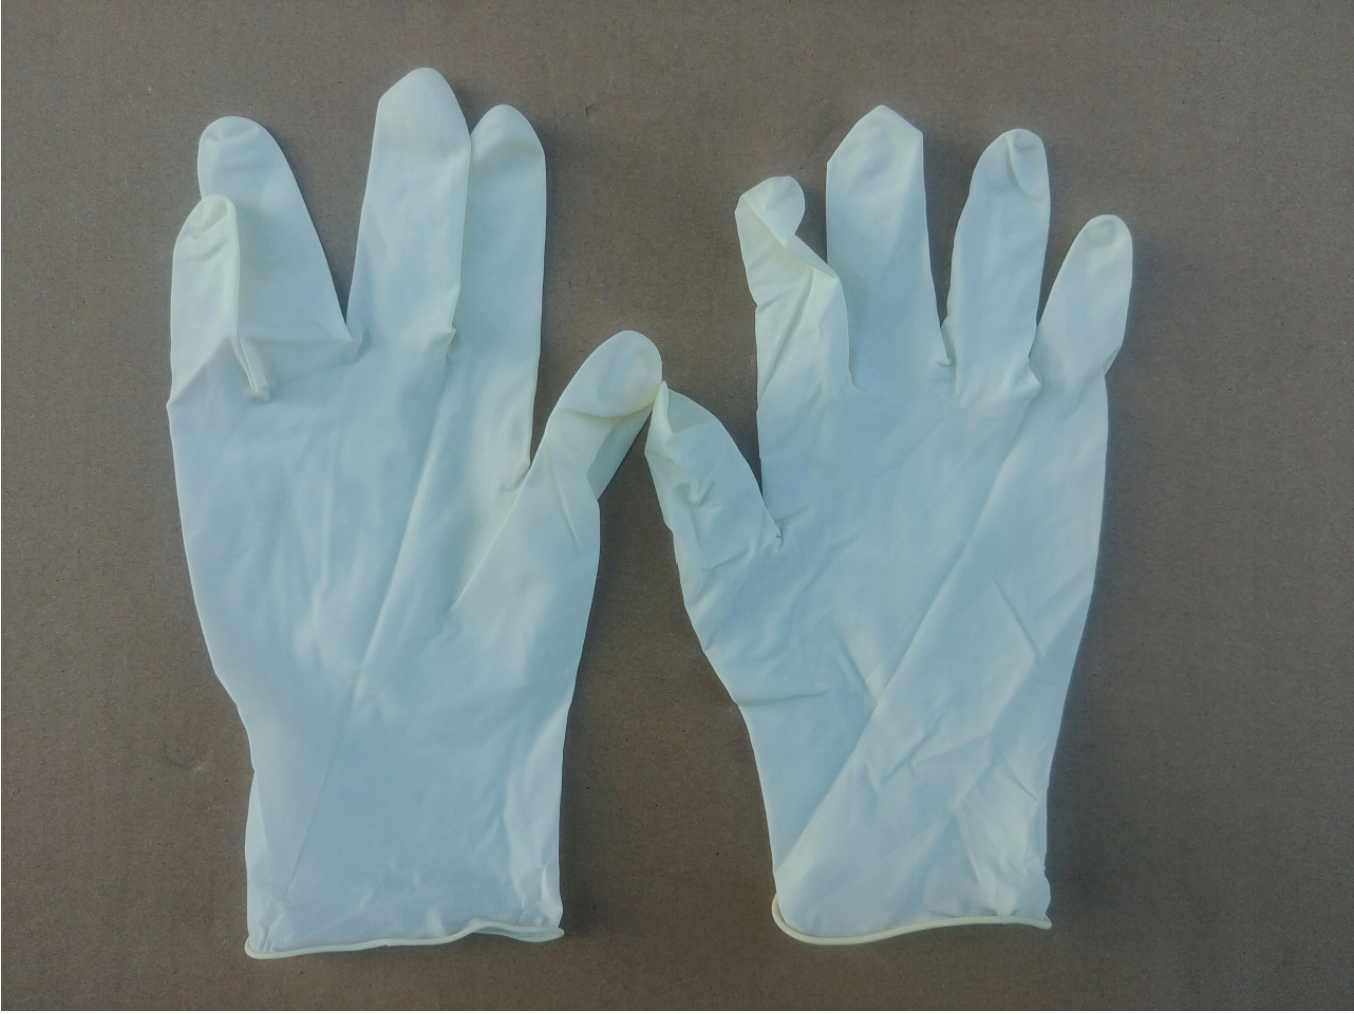 NOWE Rękawiczki naturalne lateksowe medyczne egzaminacyjne rozmiar L